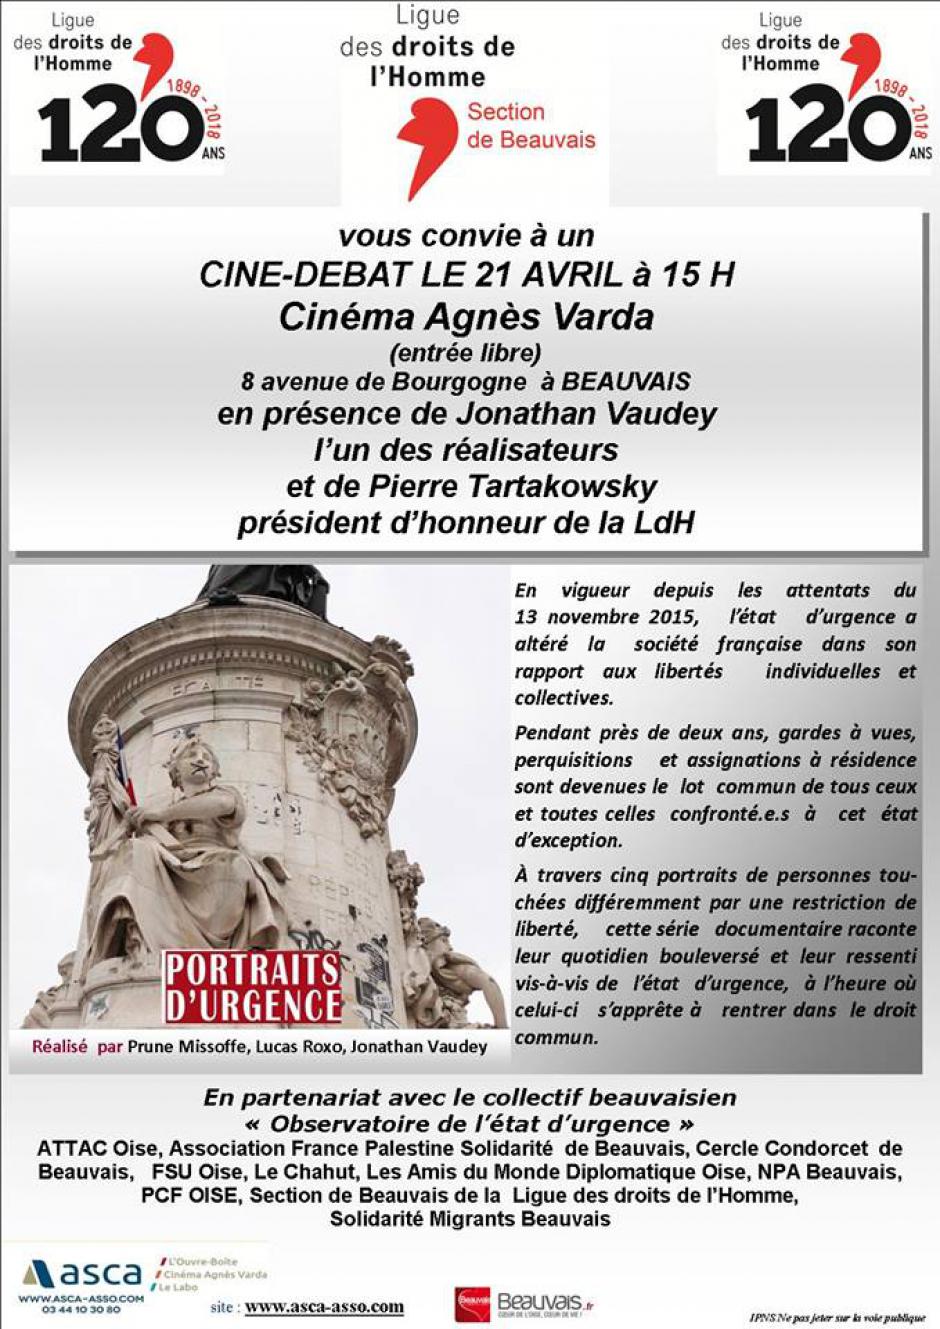 21 mars, Beauvais - LDH Beauvais-Ciné-débat « Portraits d'urgence », en présence de Jonathan Vaudey et de Pierre Tartakowsky